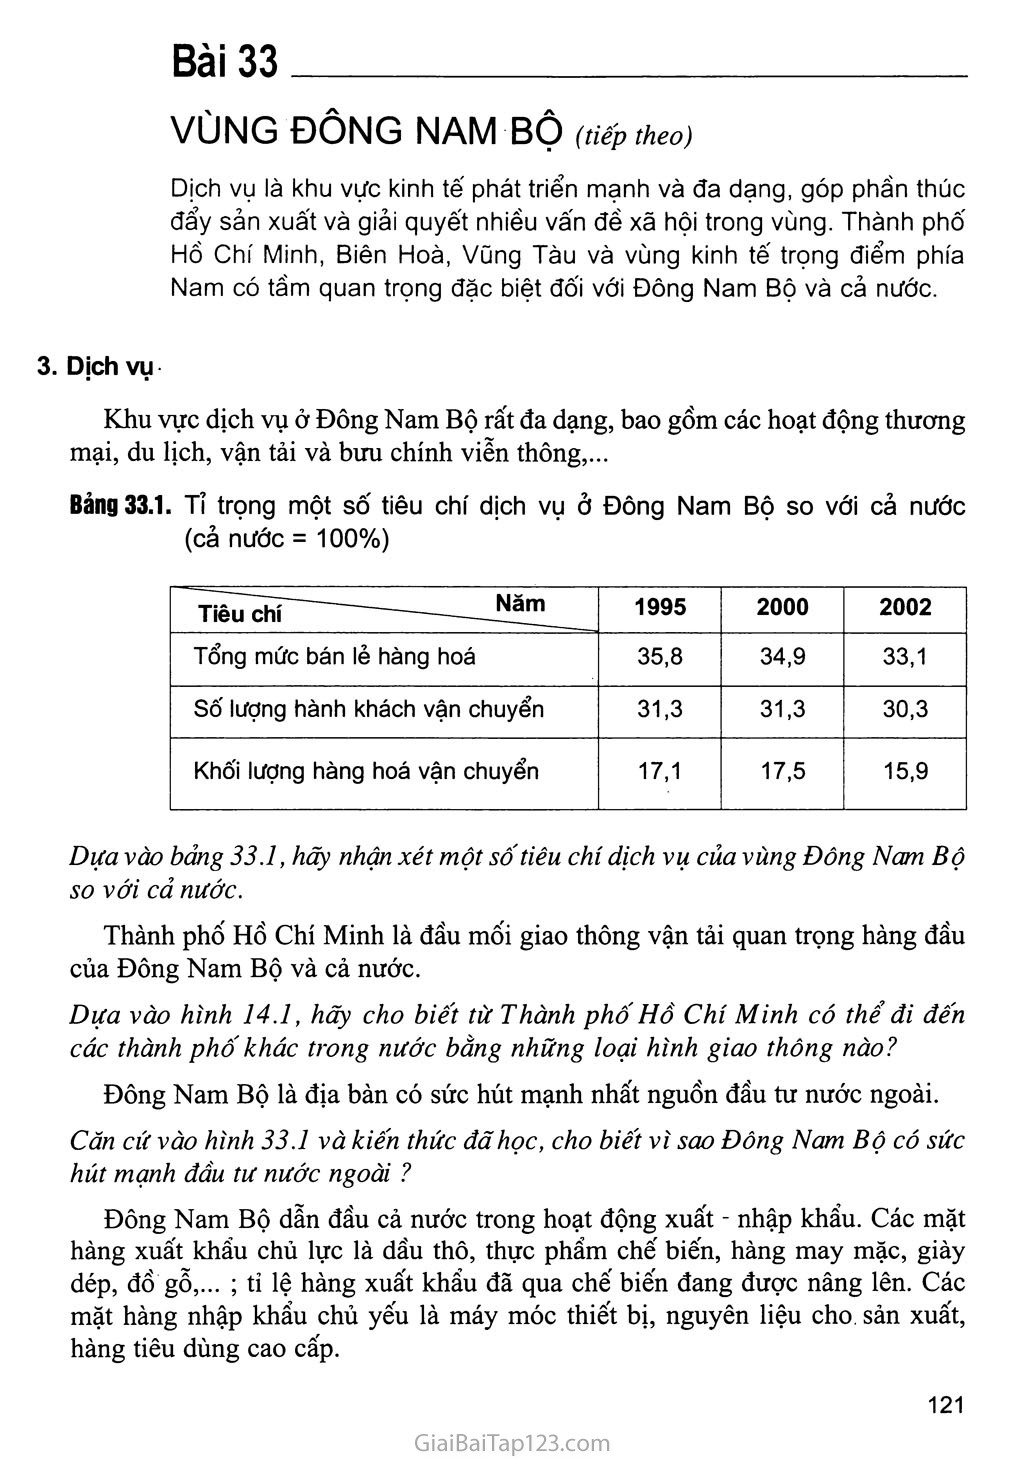 Bài 33. Vùng Đông Nam Bộ (tiếp theo) trang 1